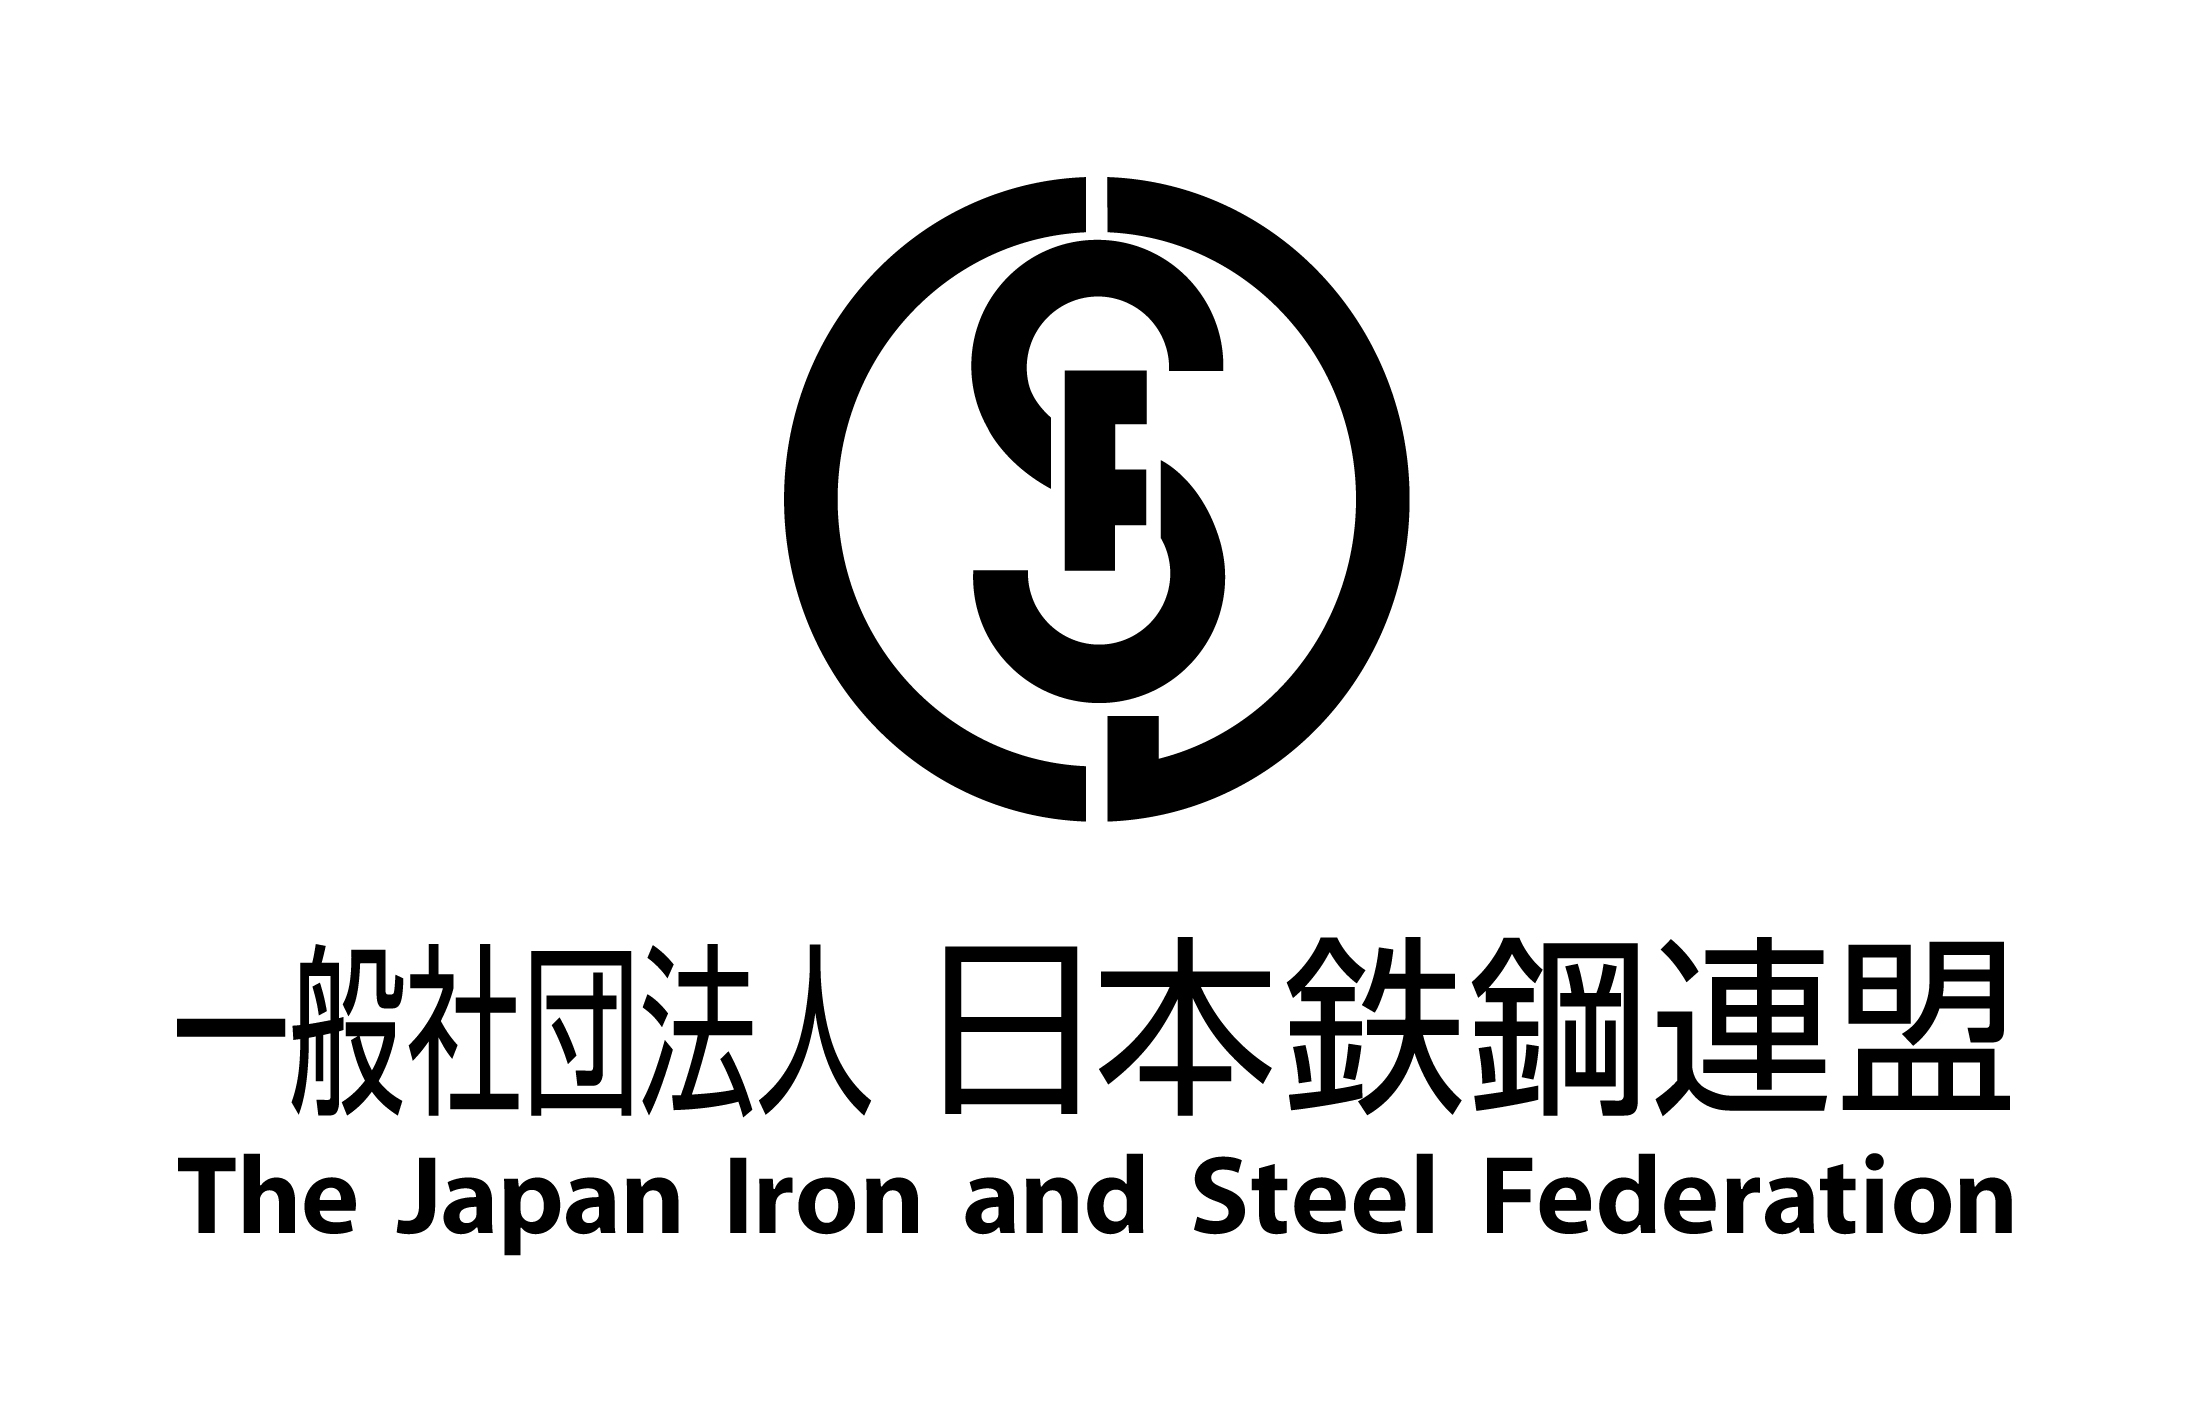 افت صادرات فولاد ژاپن به آمریکا موقتی است/ مصرف گنندگان آمریکایی گزینه دیگری برای واردات ندارند